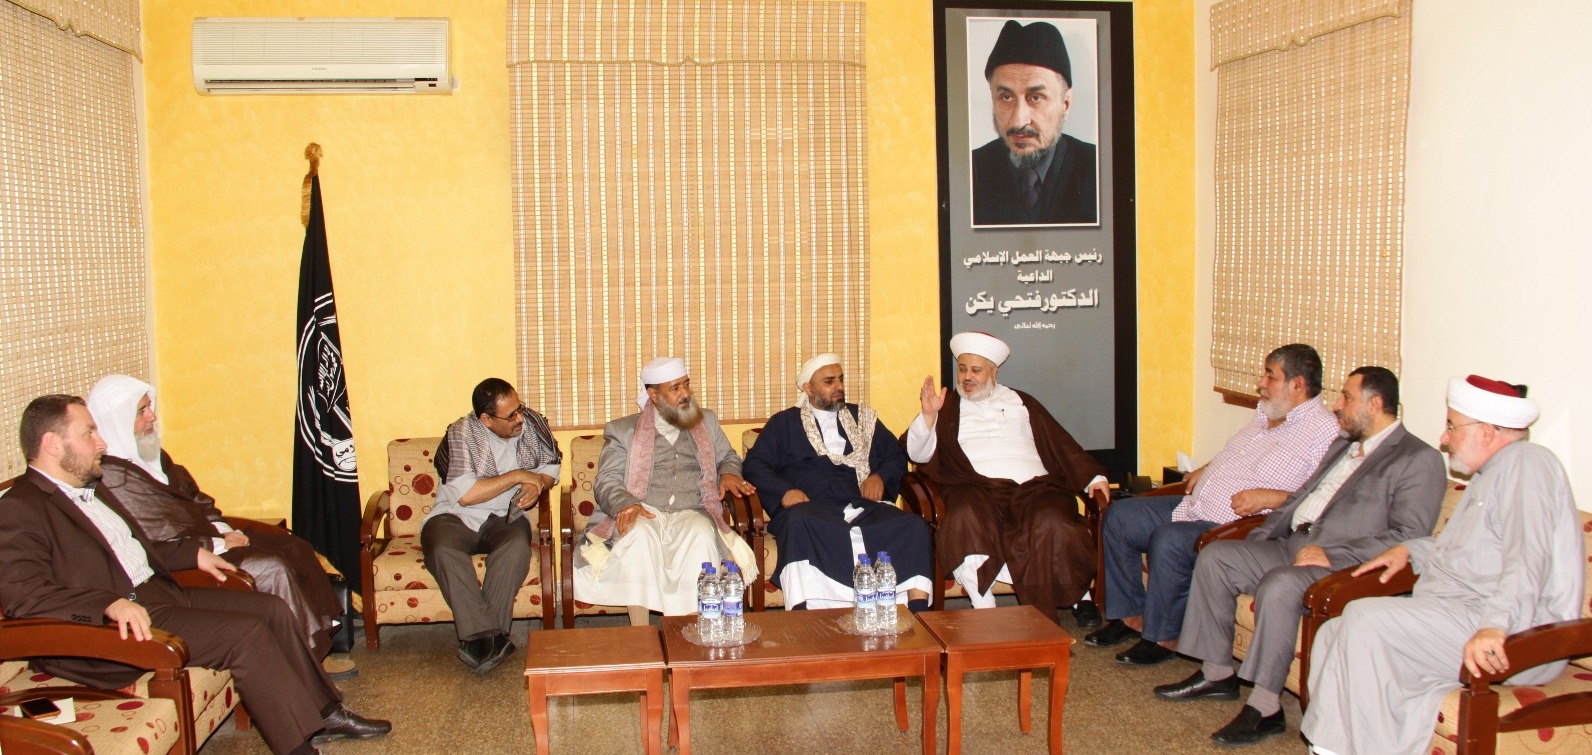 جبهة العمل الاسلامي وعلماء اليمن